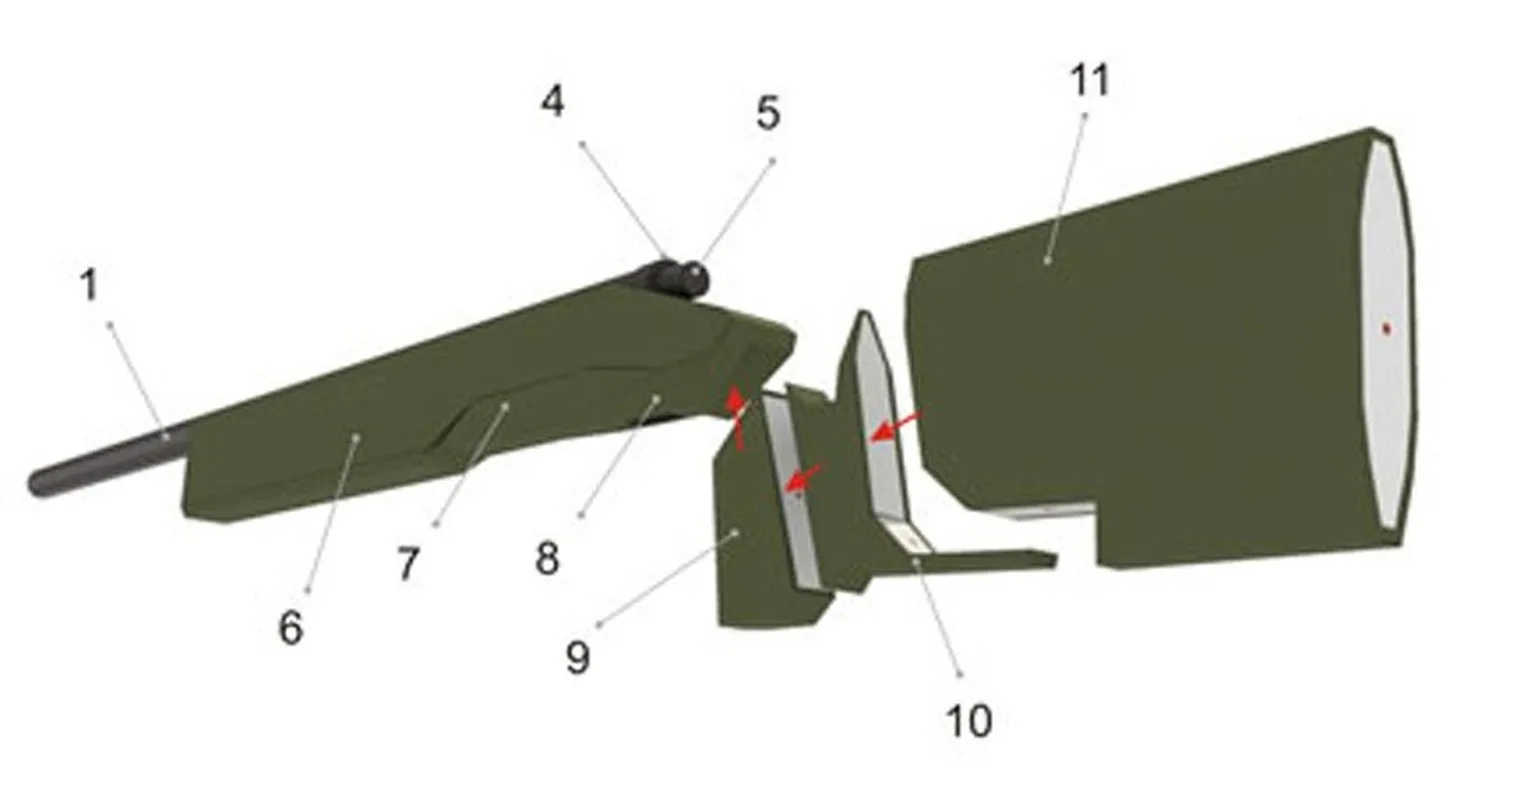 1:3 M40A3 снайперский пистолет emulatory DIY 3D бумажная карточка модель Конструкторы развивающие игрушки военная модель строительные игрушки